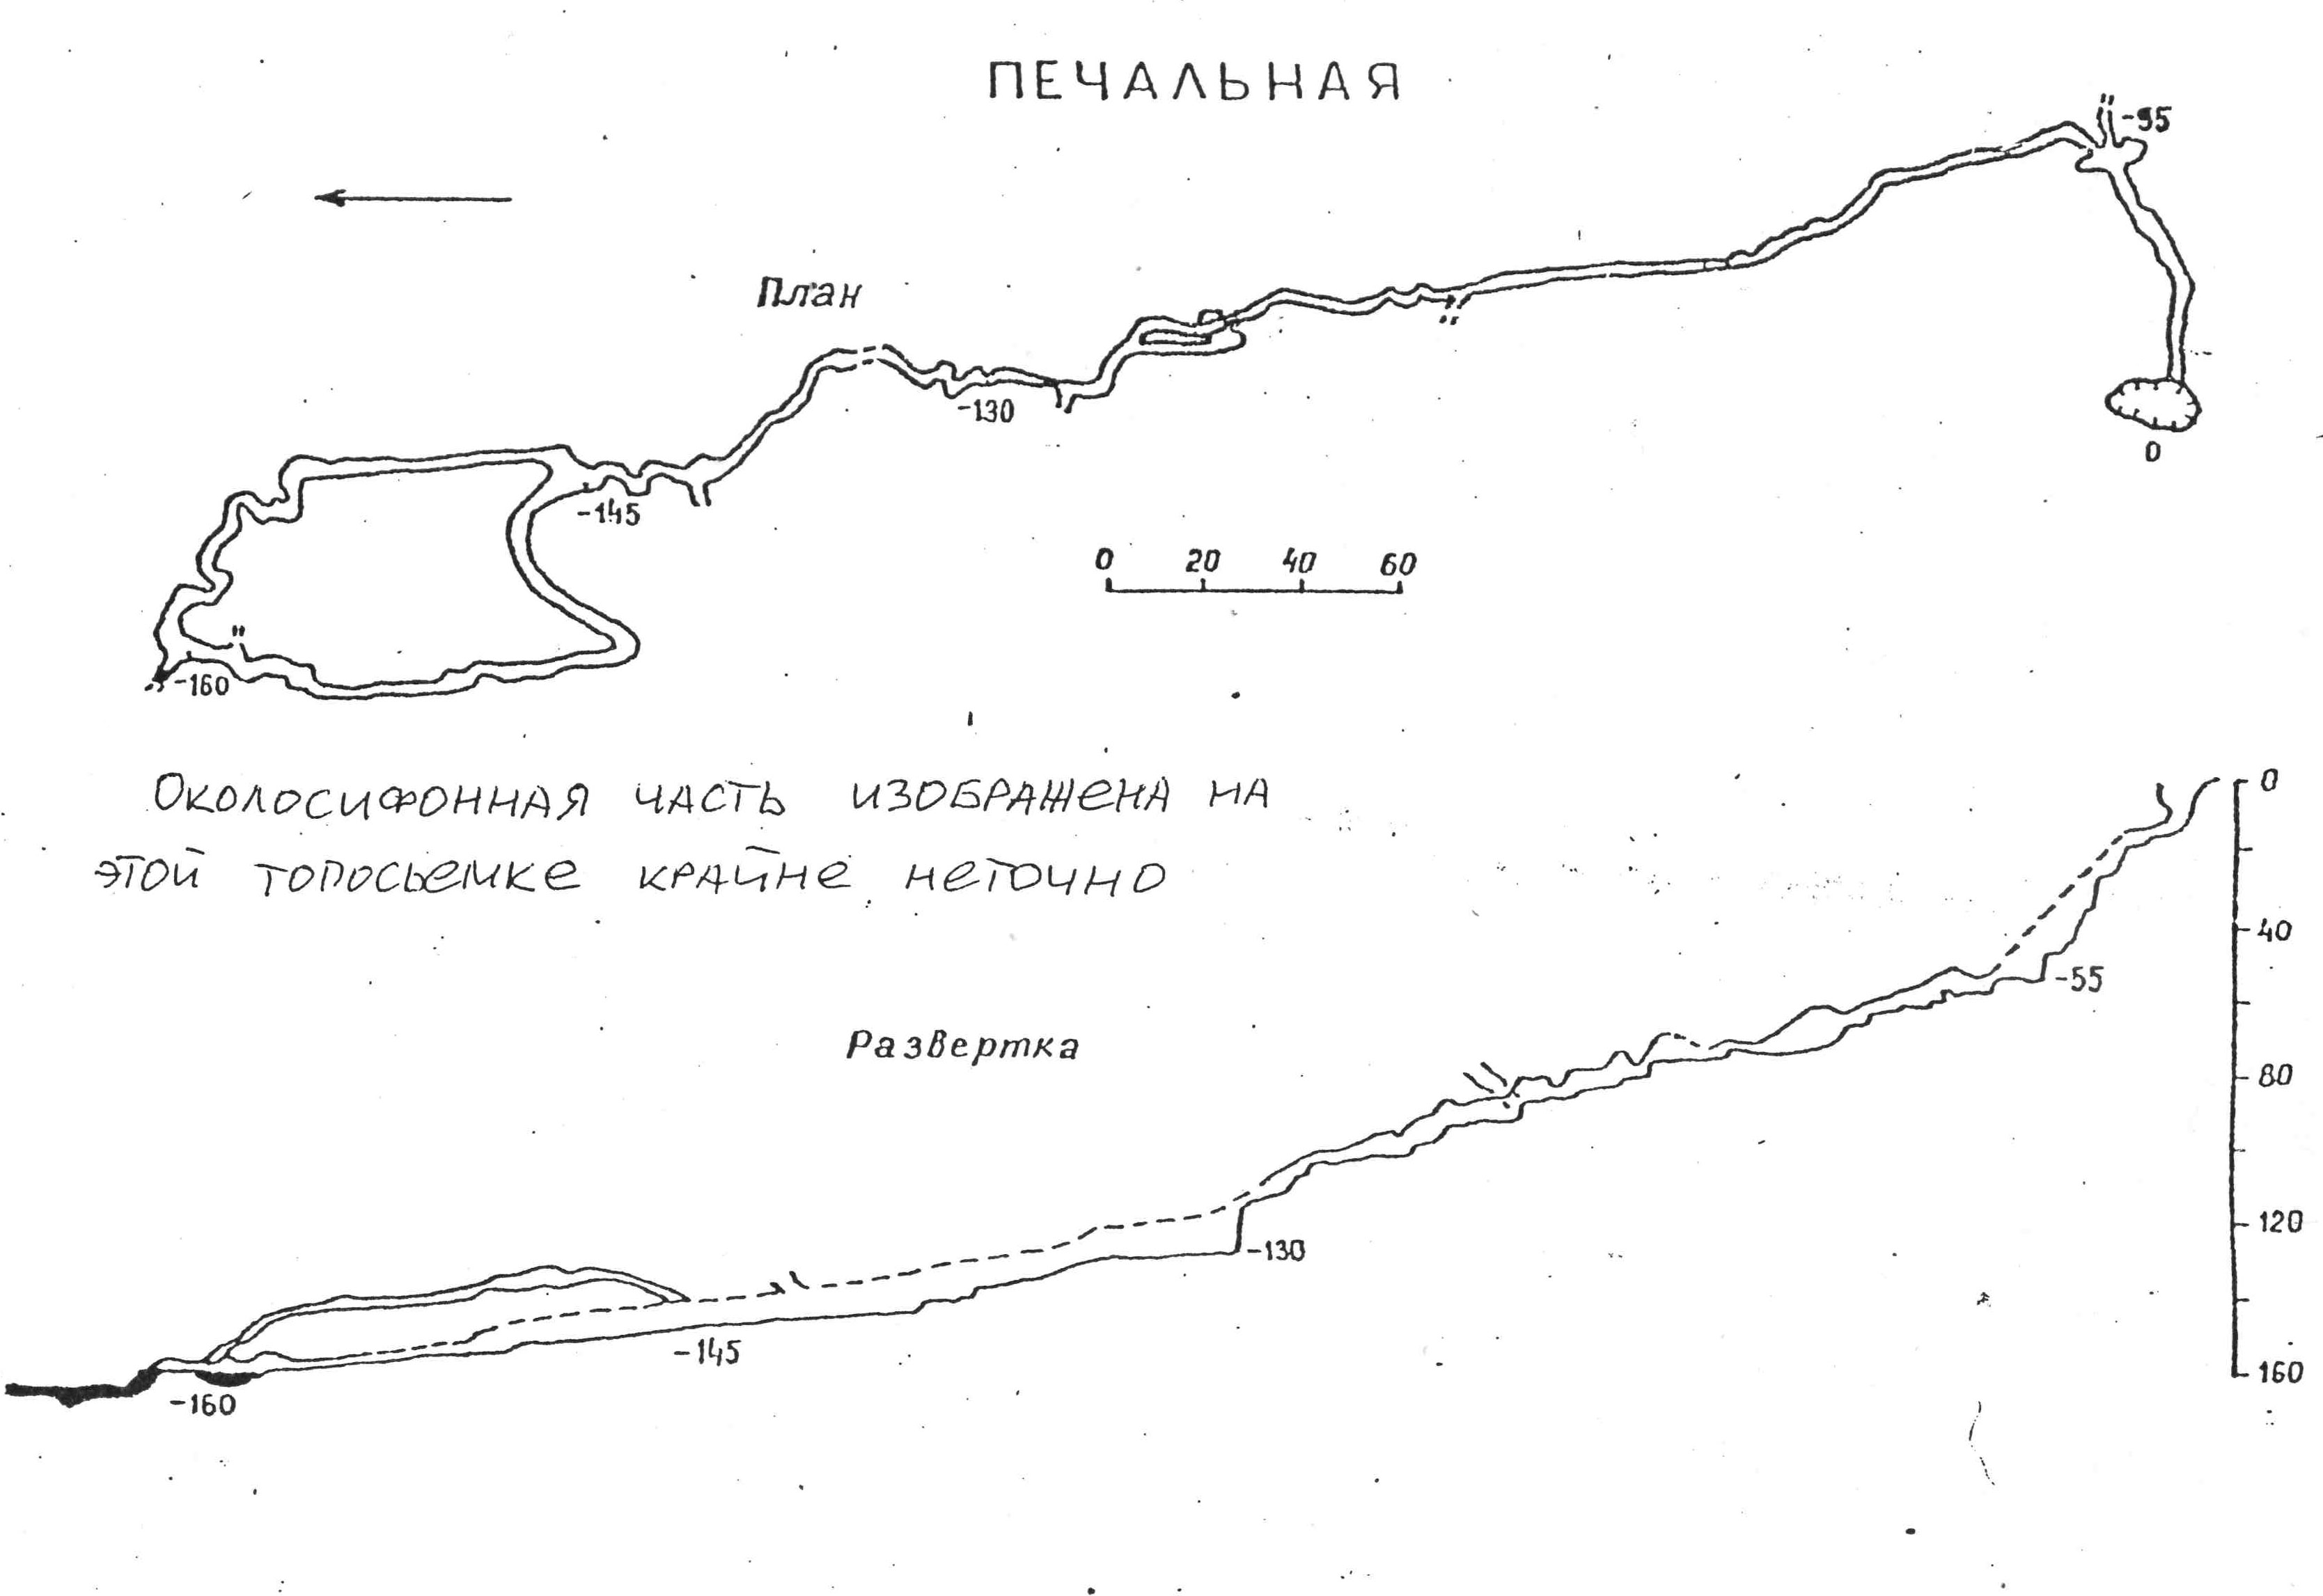 Краснодарский край, Сочинский район, пещеры Печальная (Клизматрон) и Красноярские Штаны